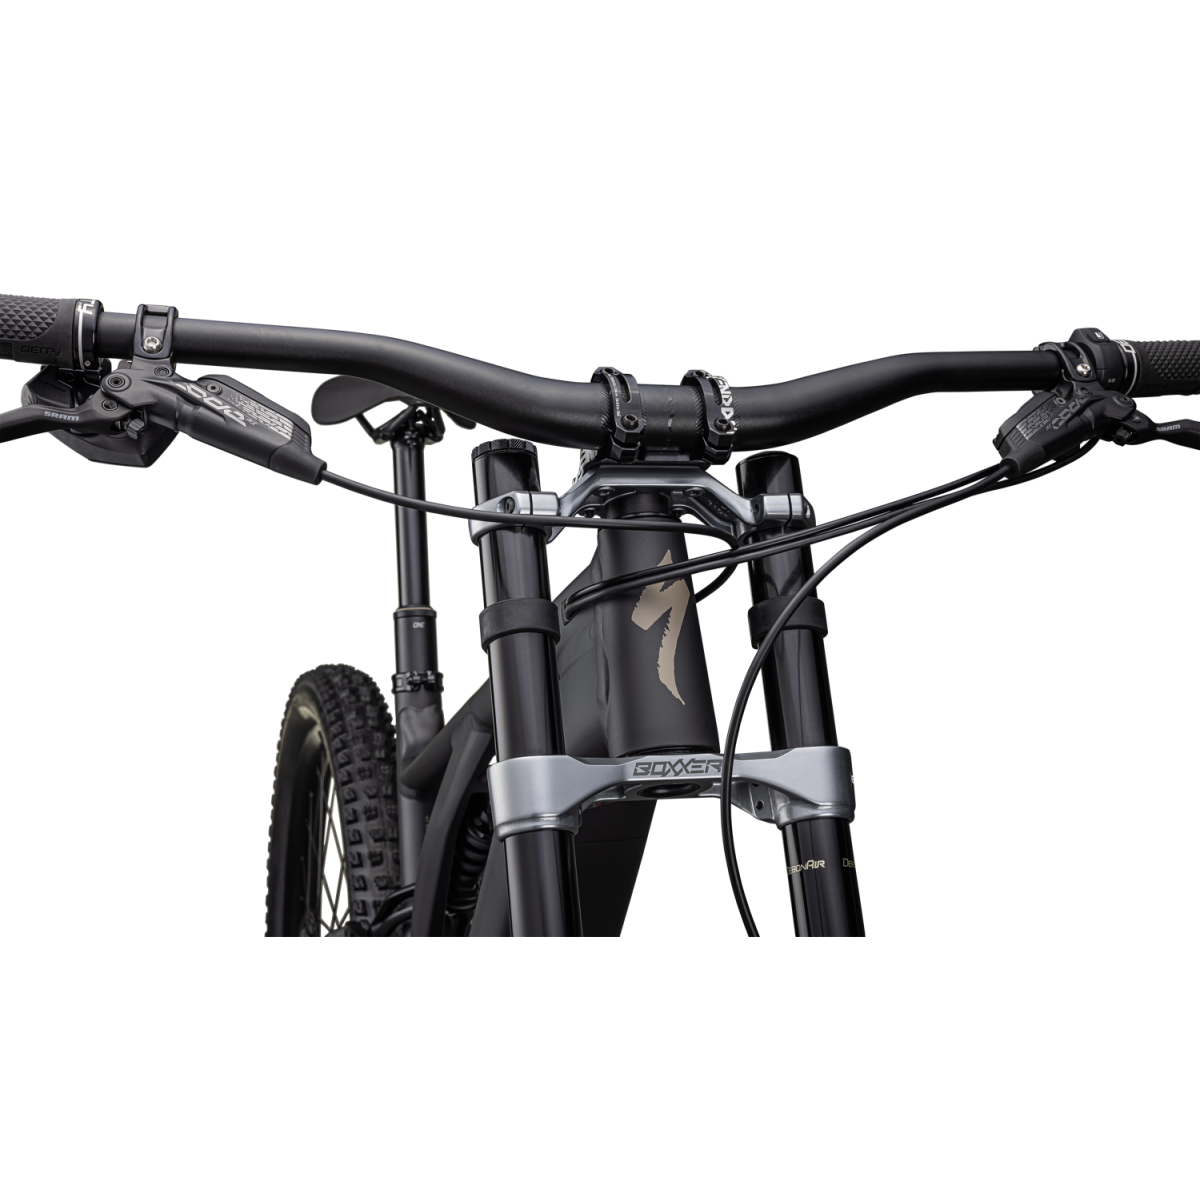 Specialized Turbo Kenevo Expert elektrinis dviratis / Satin Obsidian